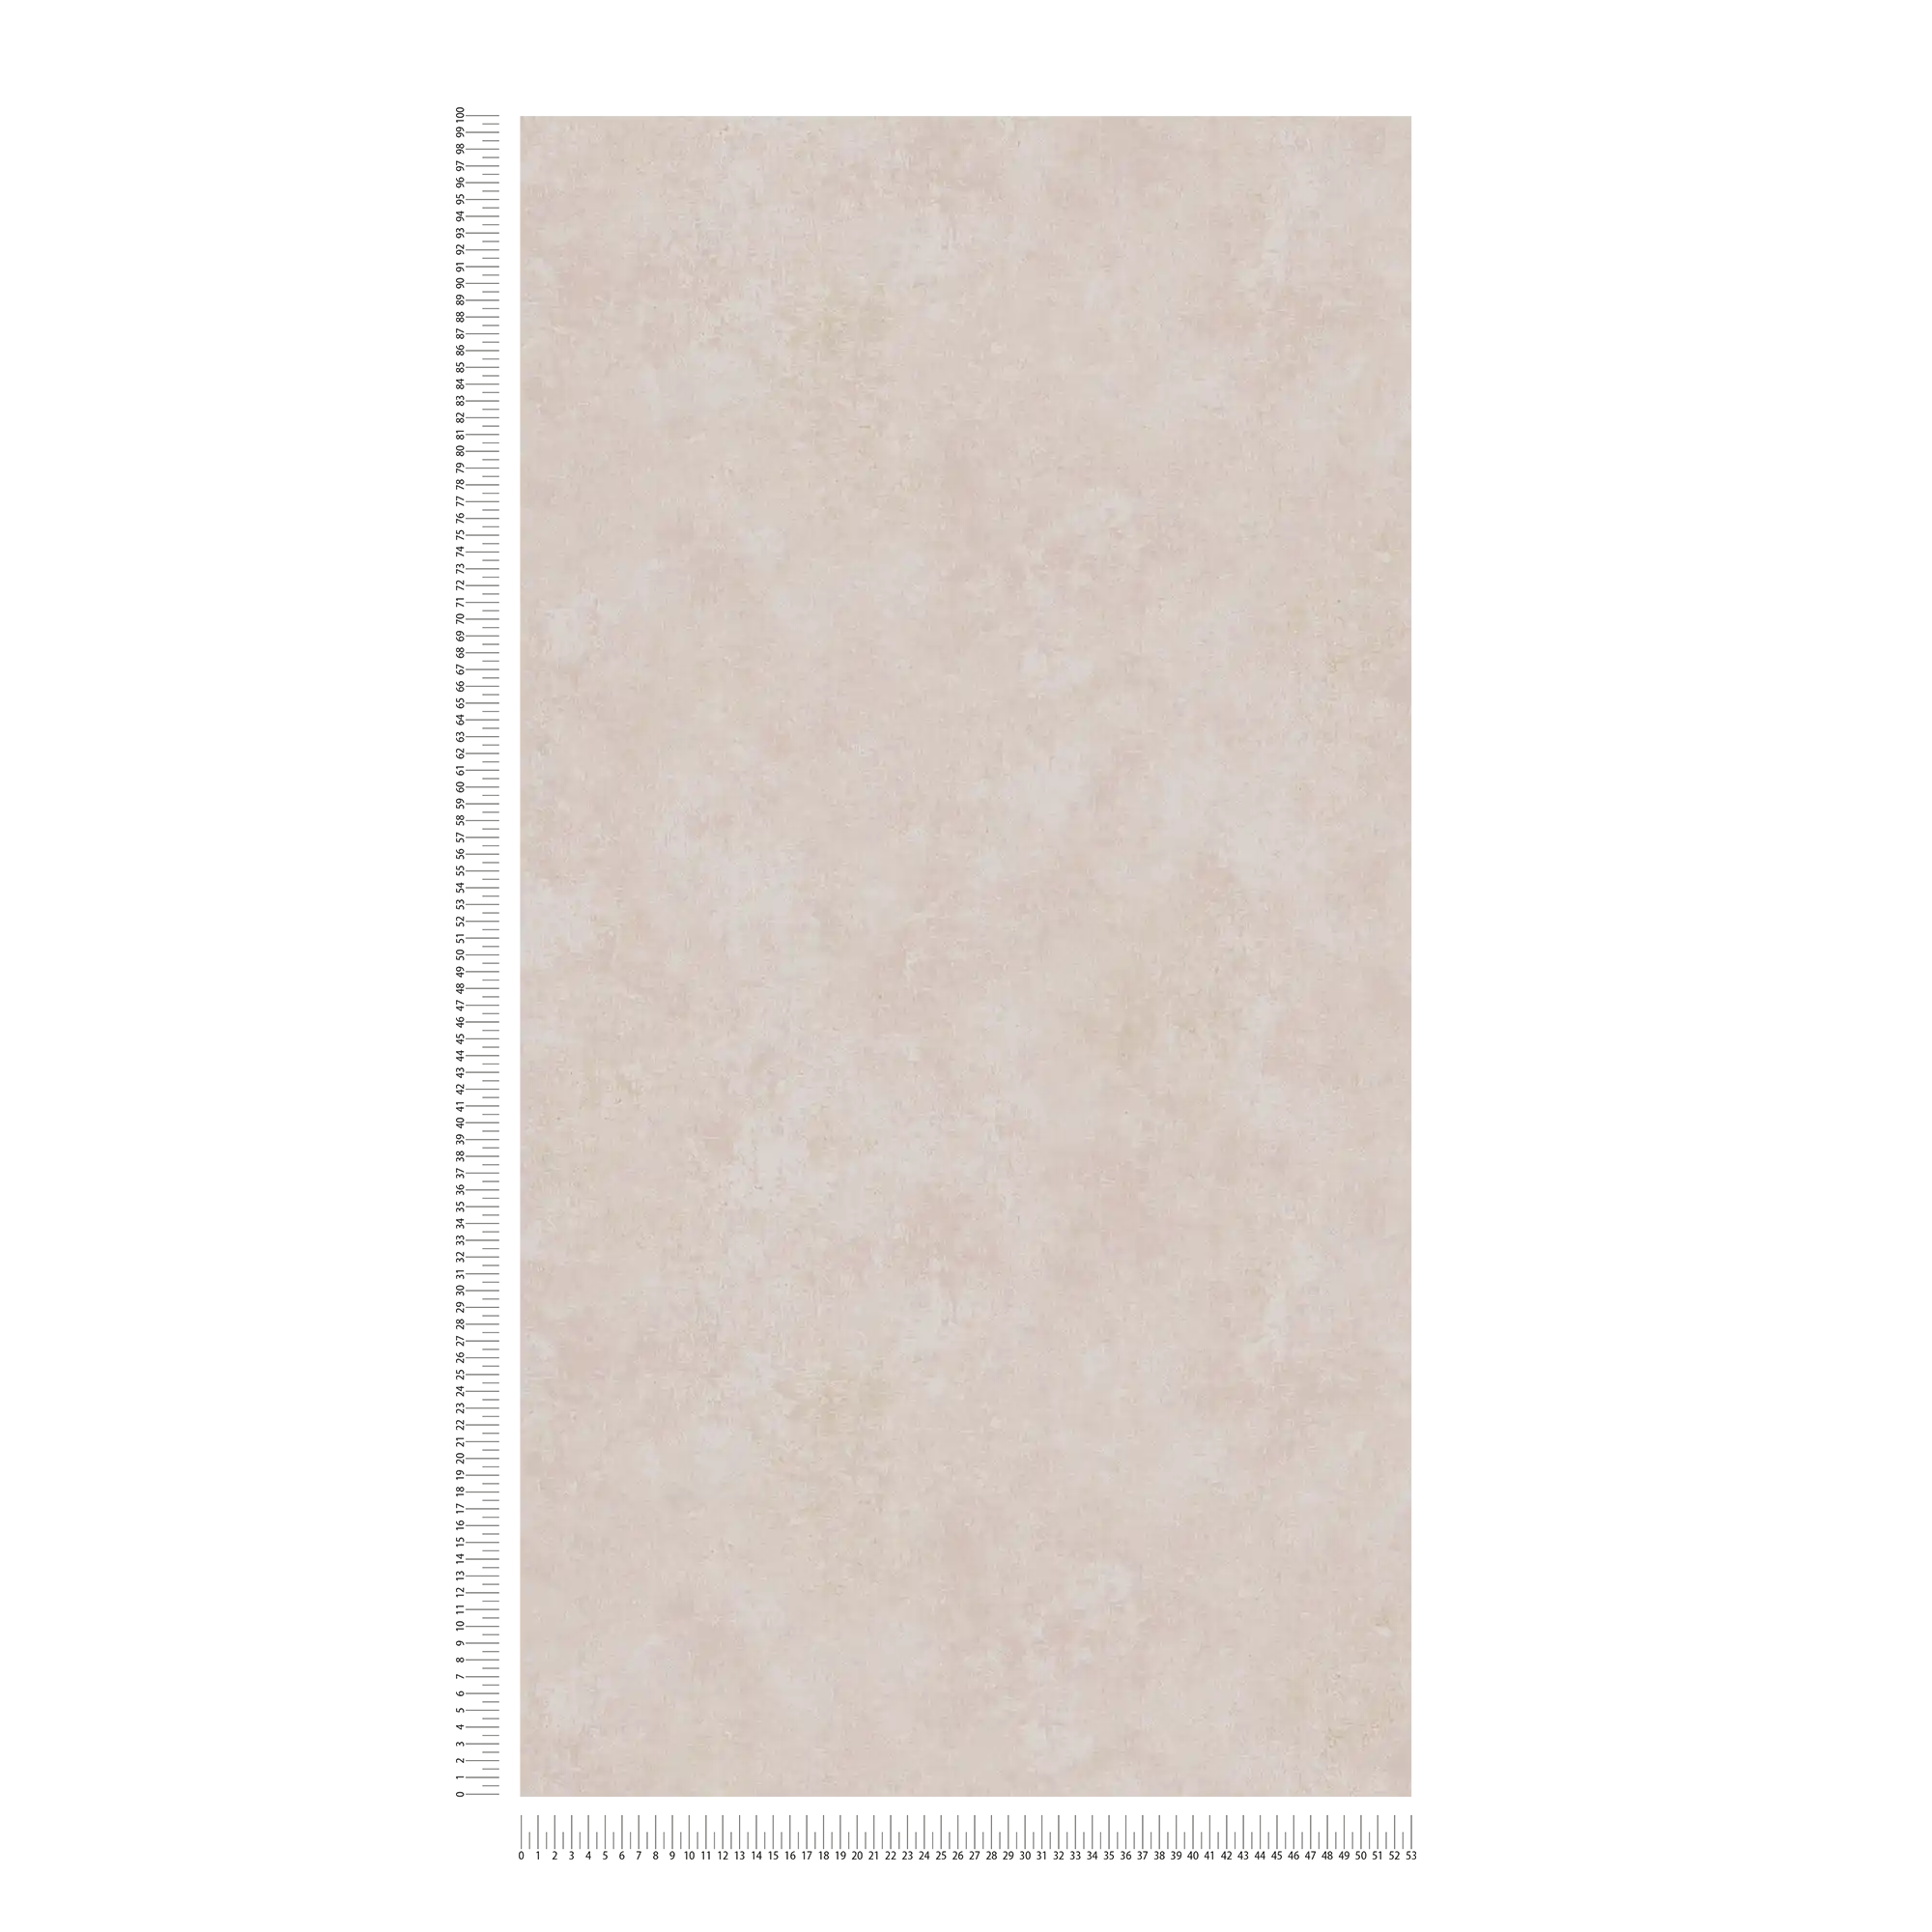             Carta da parati in tessuto non tessuto effetto intonaco, design used & retro - rosa, crema
        